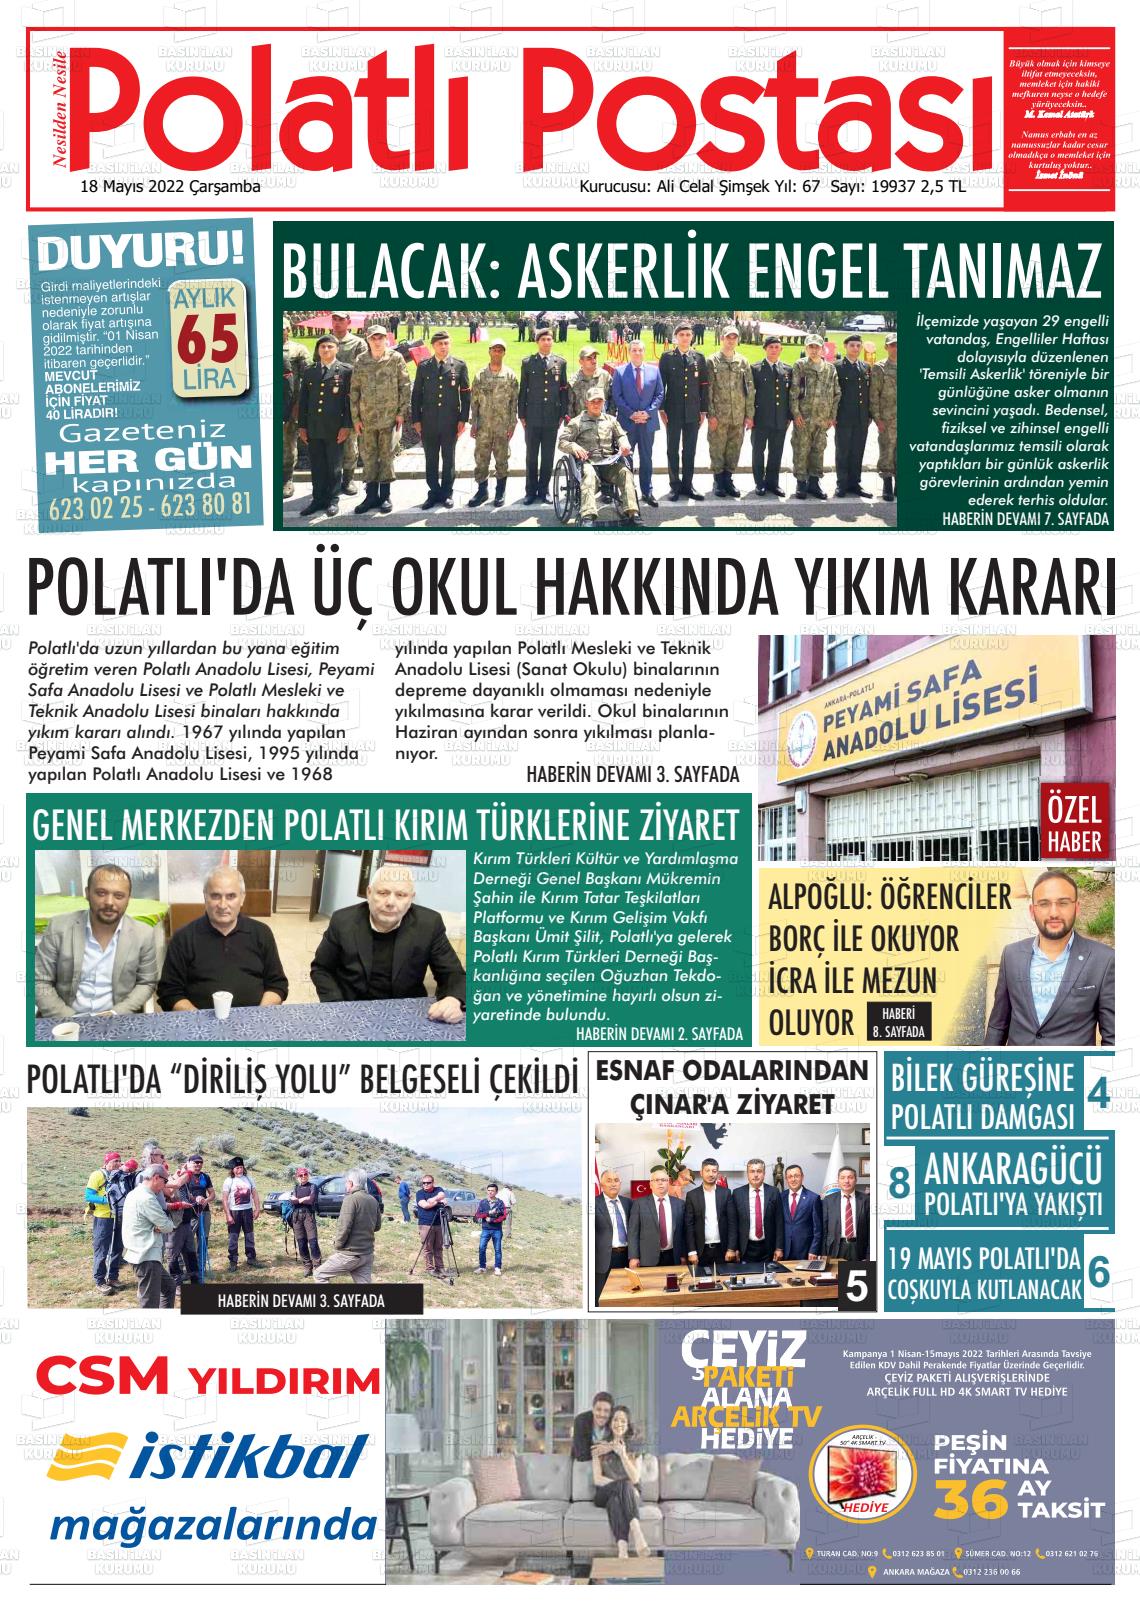 18 Mayıs 2022 Polatlı Postası Gazete Manşeti